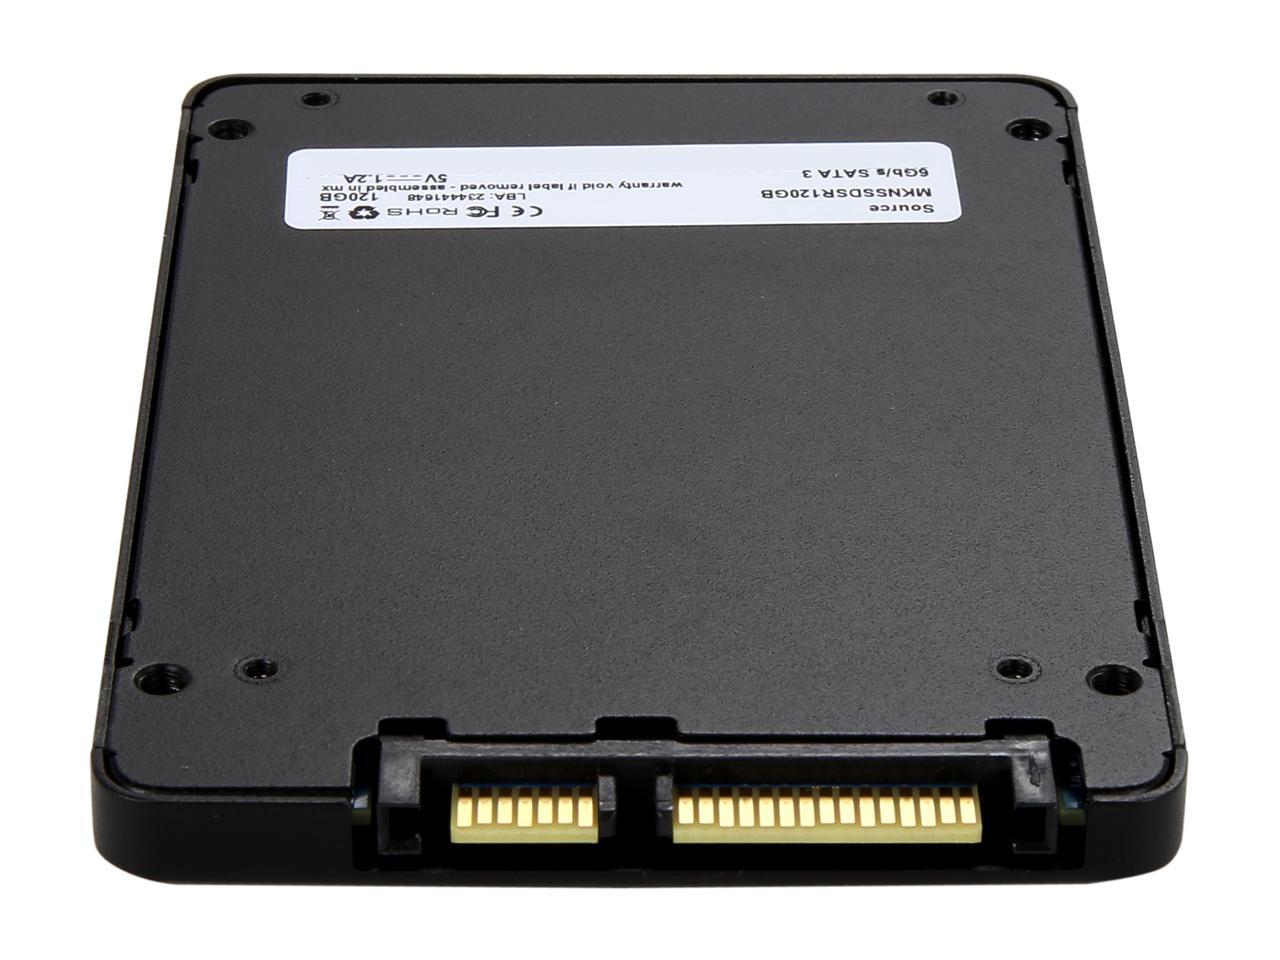 Mushkin Source 2.5" 120GB SATA III 3D TLC Internal Solid State Drive (SSD) MKNSSDSR120GB